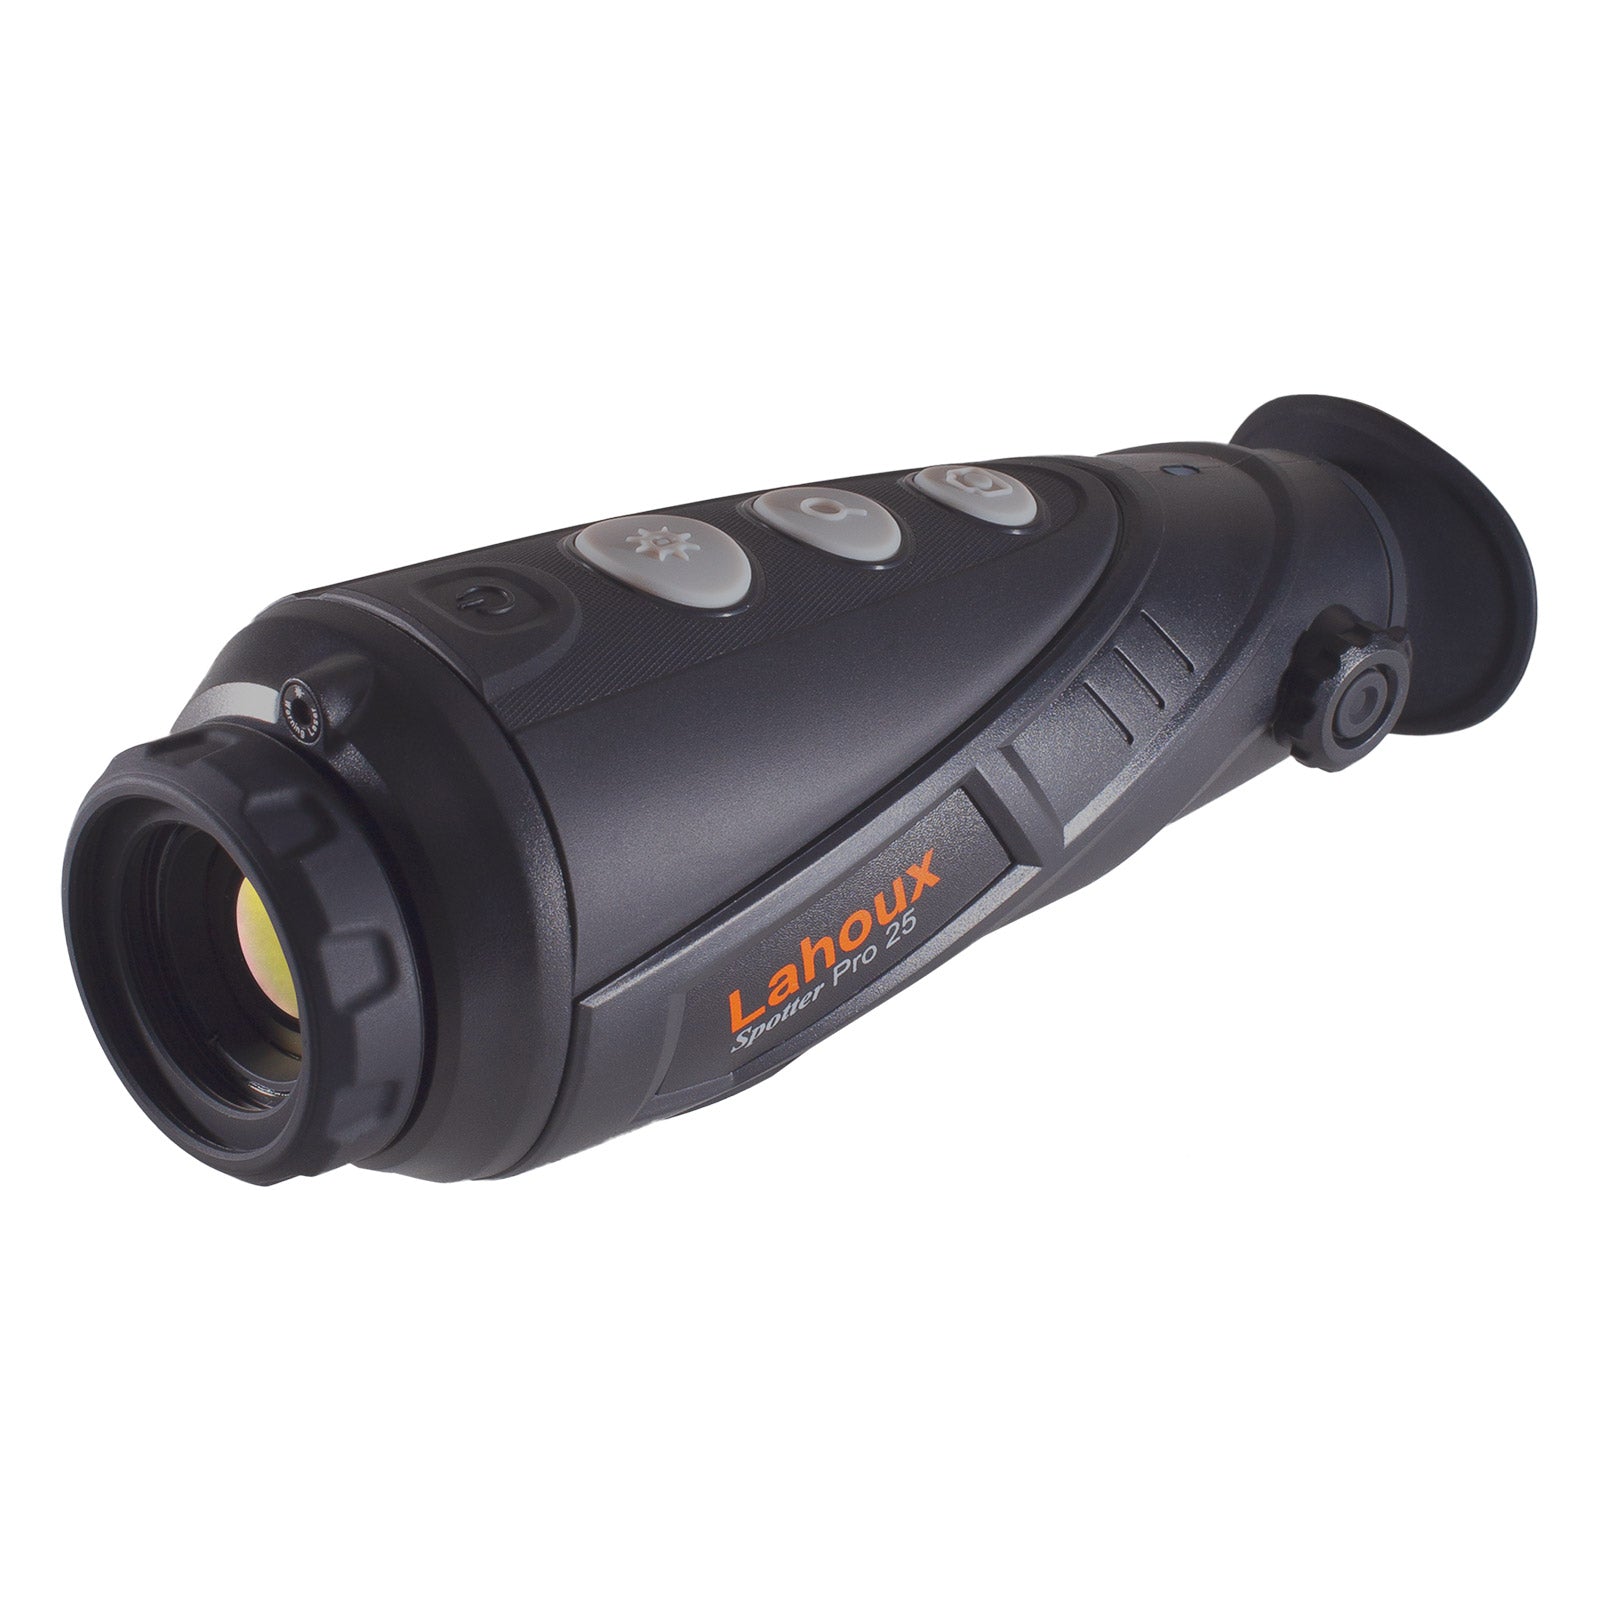 Es handelt sich hier um LAHOUX Spotter Pro 25 Wärmebildkamera für die Jagd.